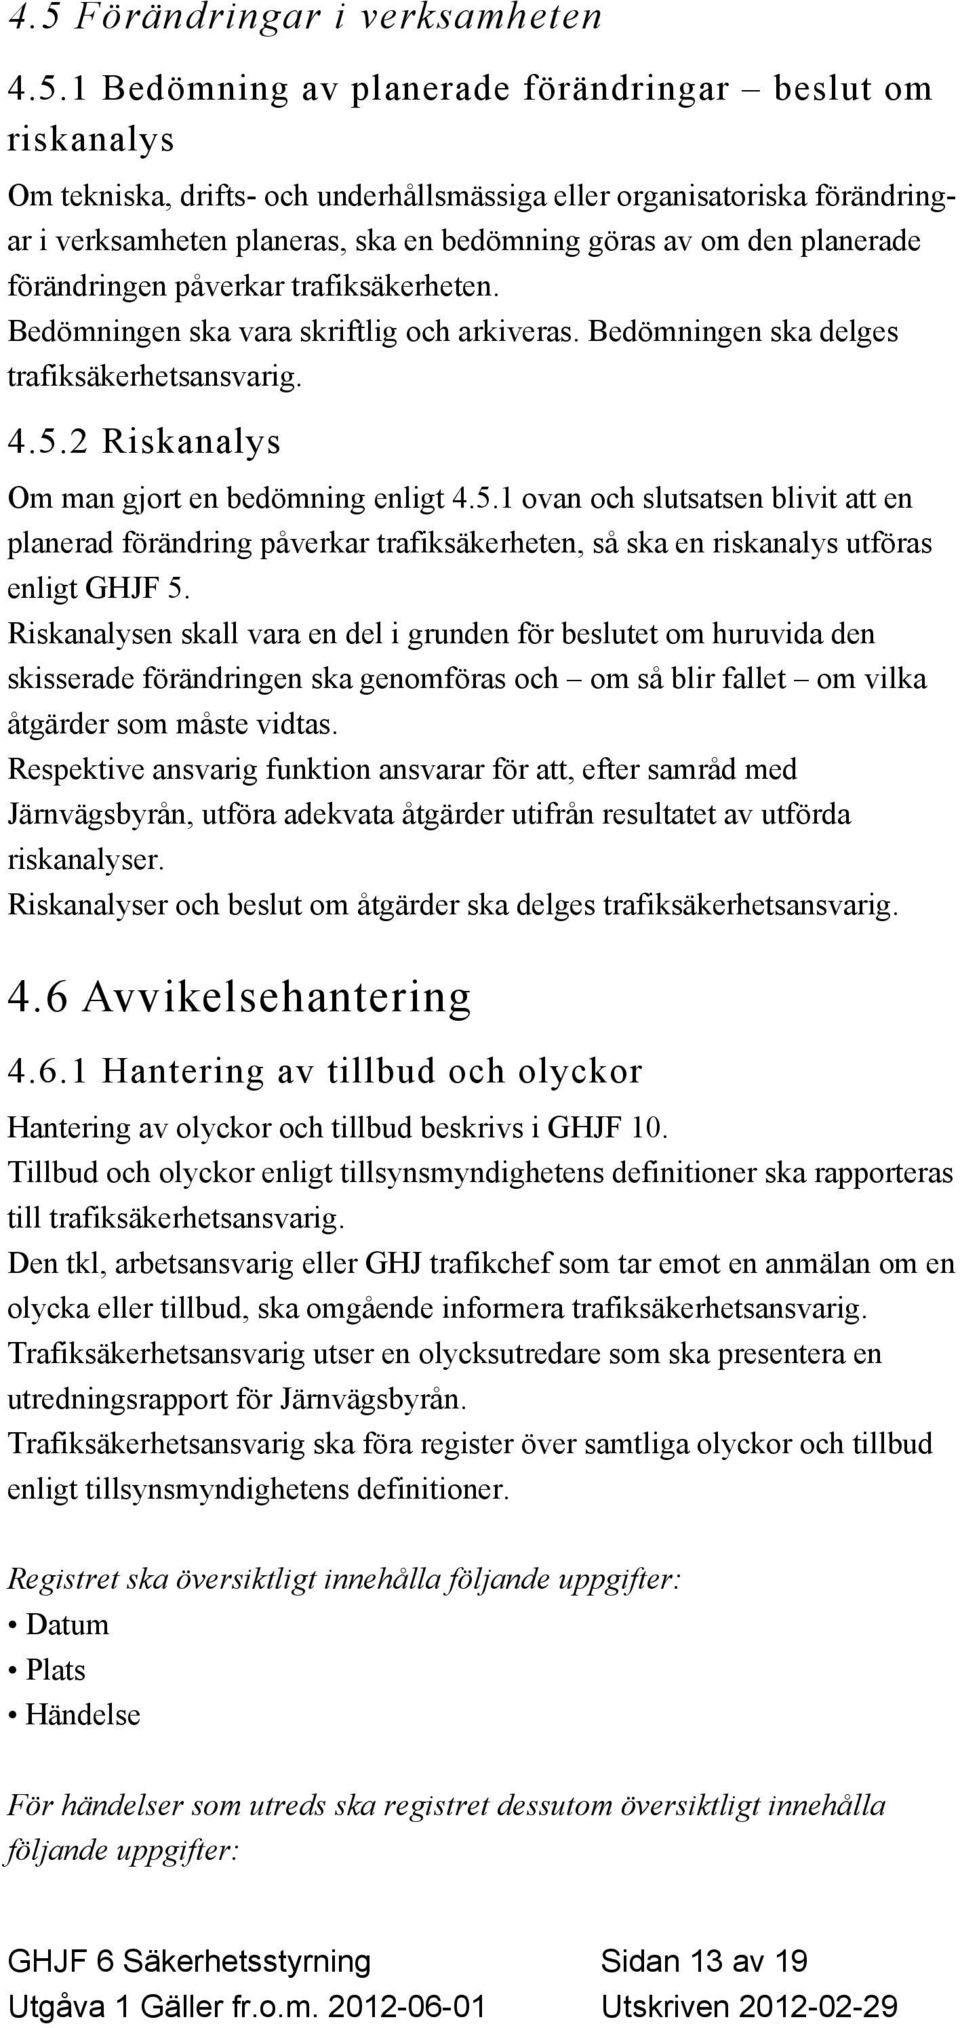 GHJF 6 SÄKERHETSSTYRNING - PDF Free Download